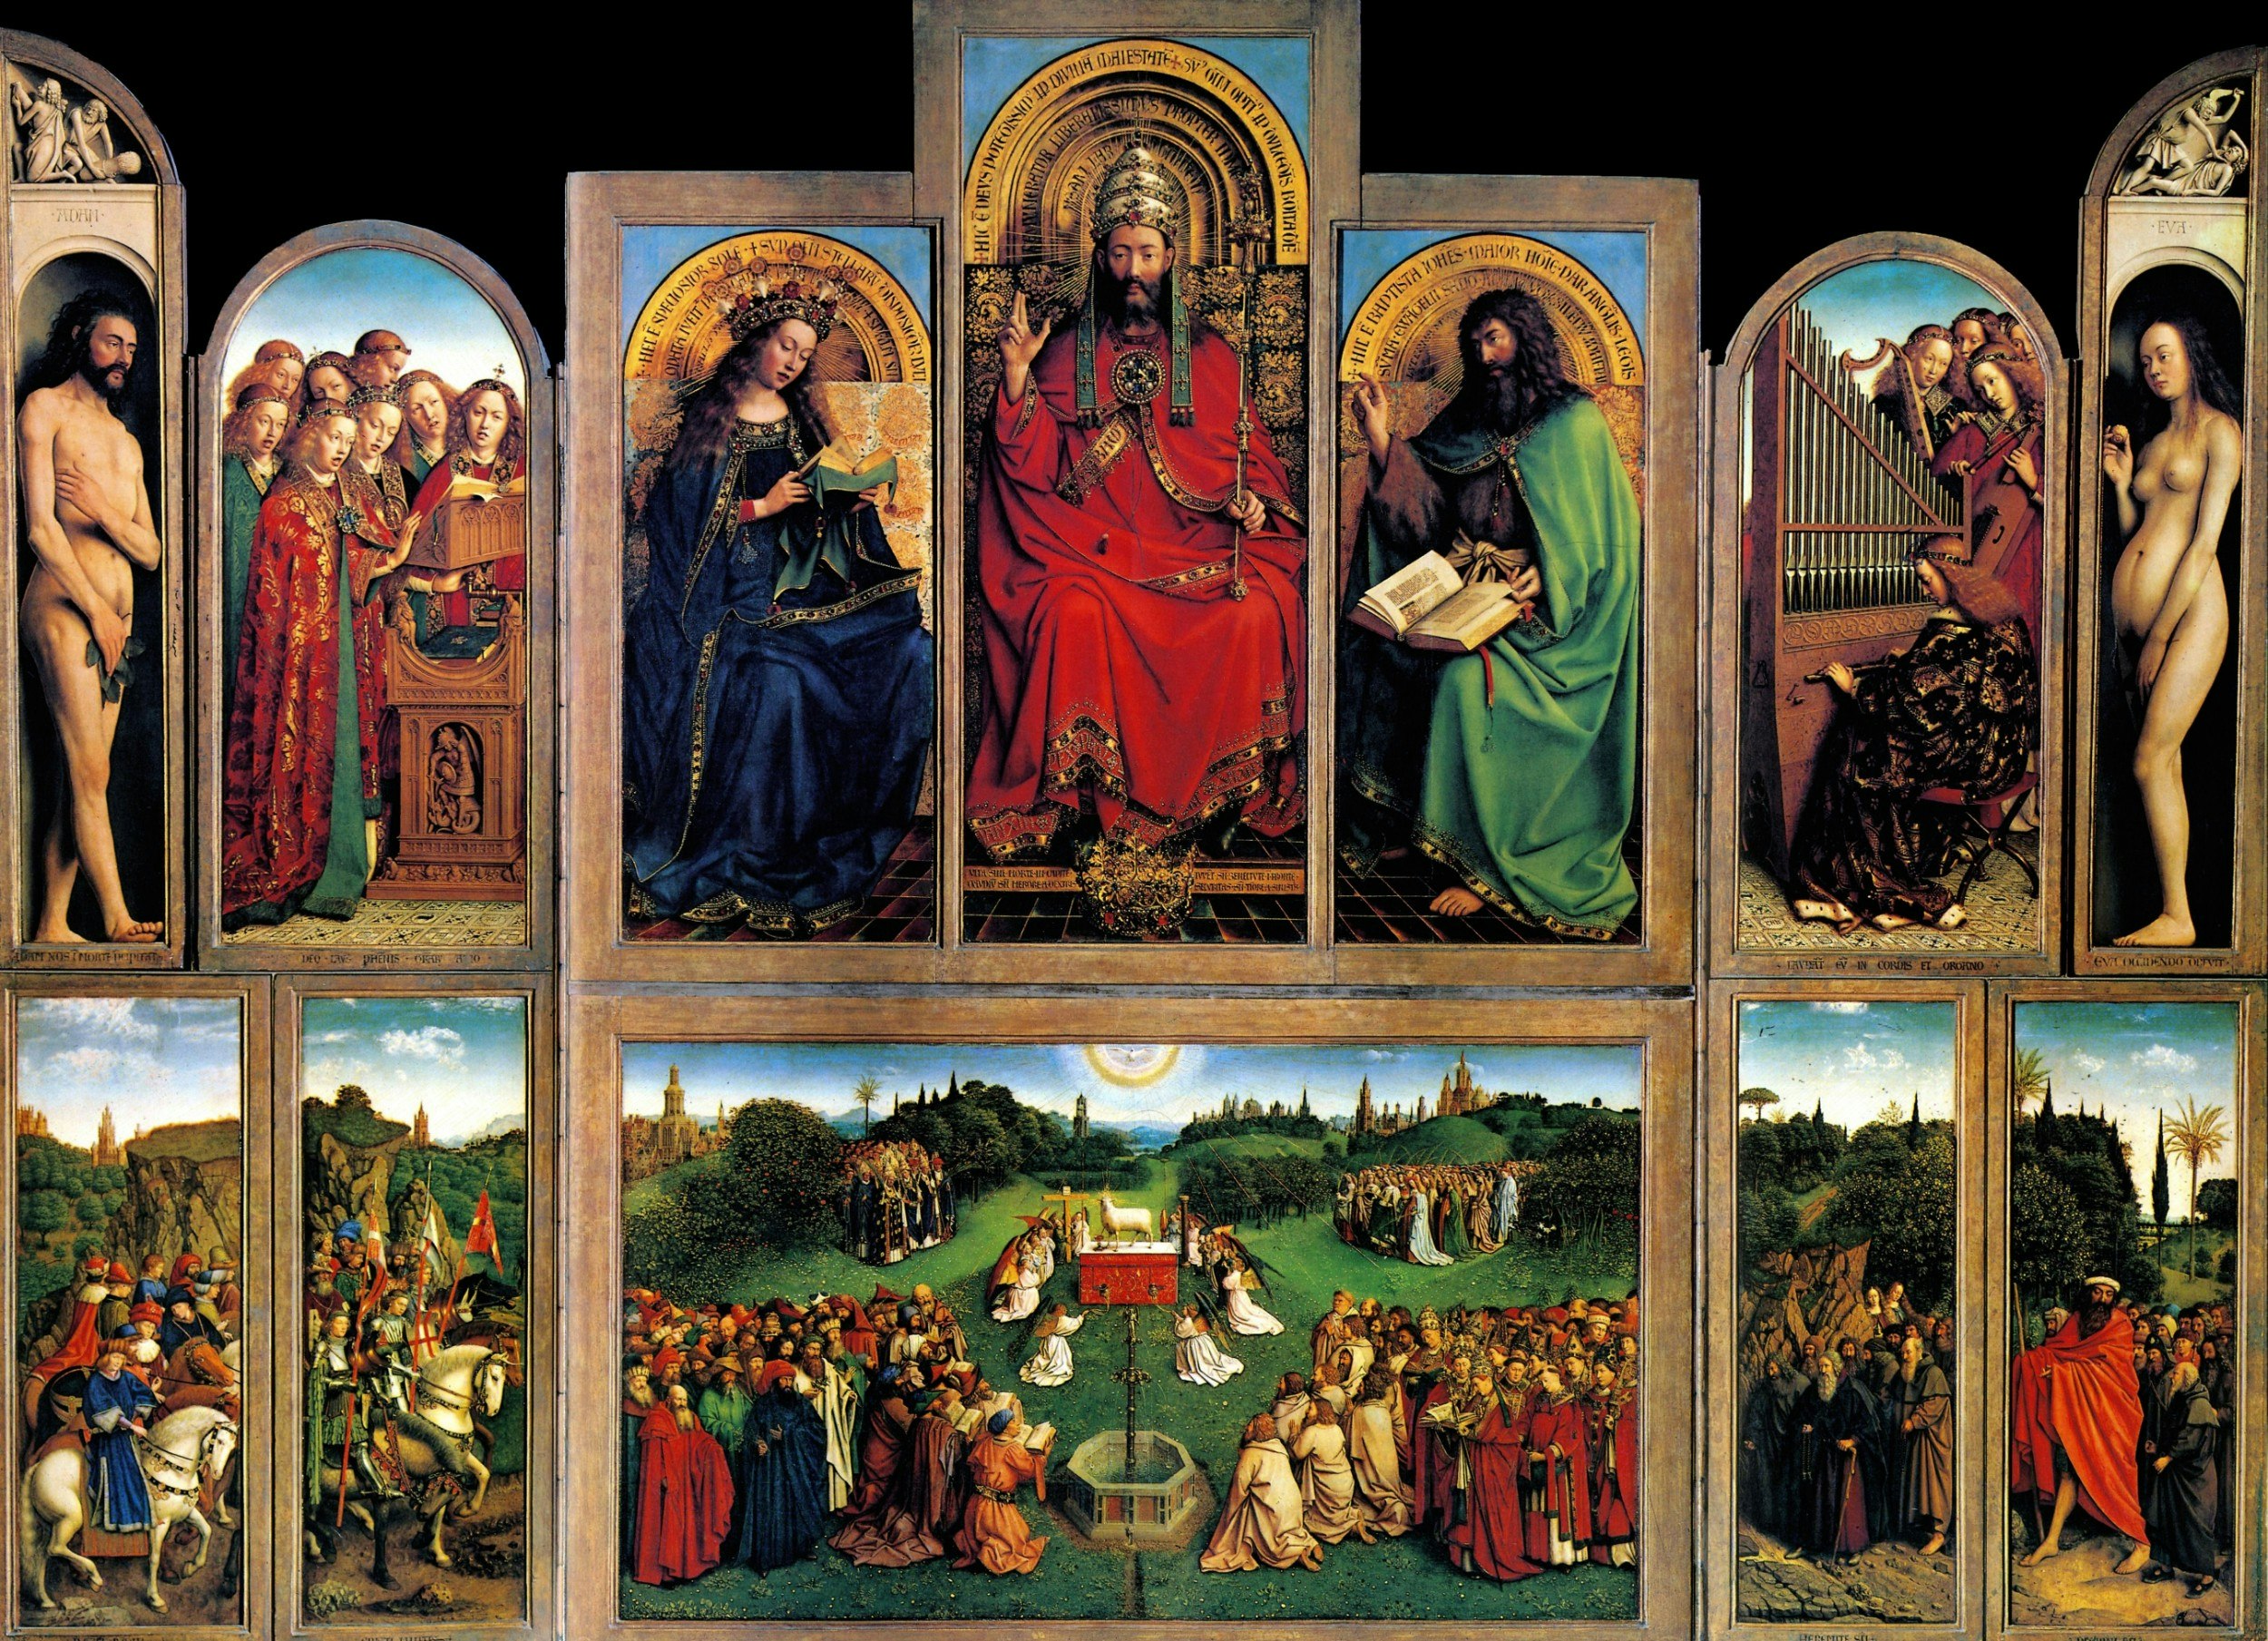 The Ghent Altarpiece masterpiece